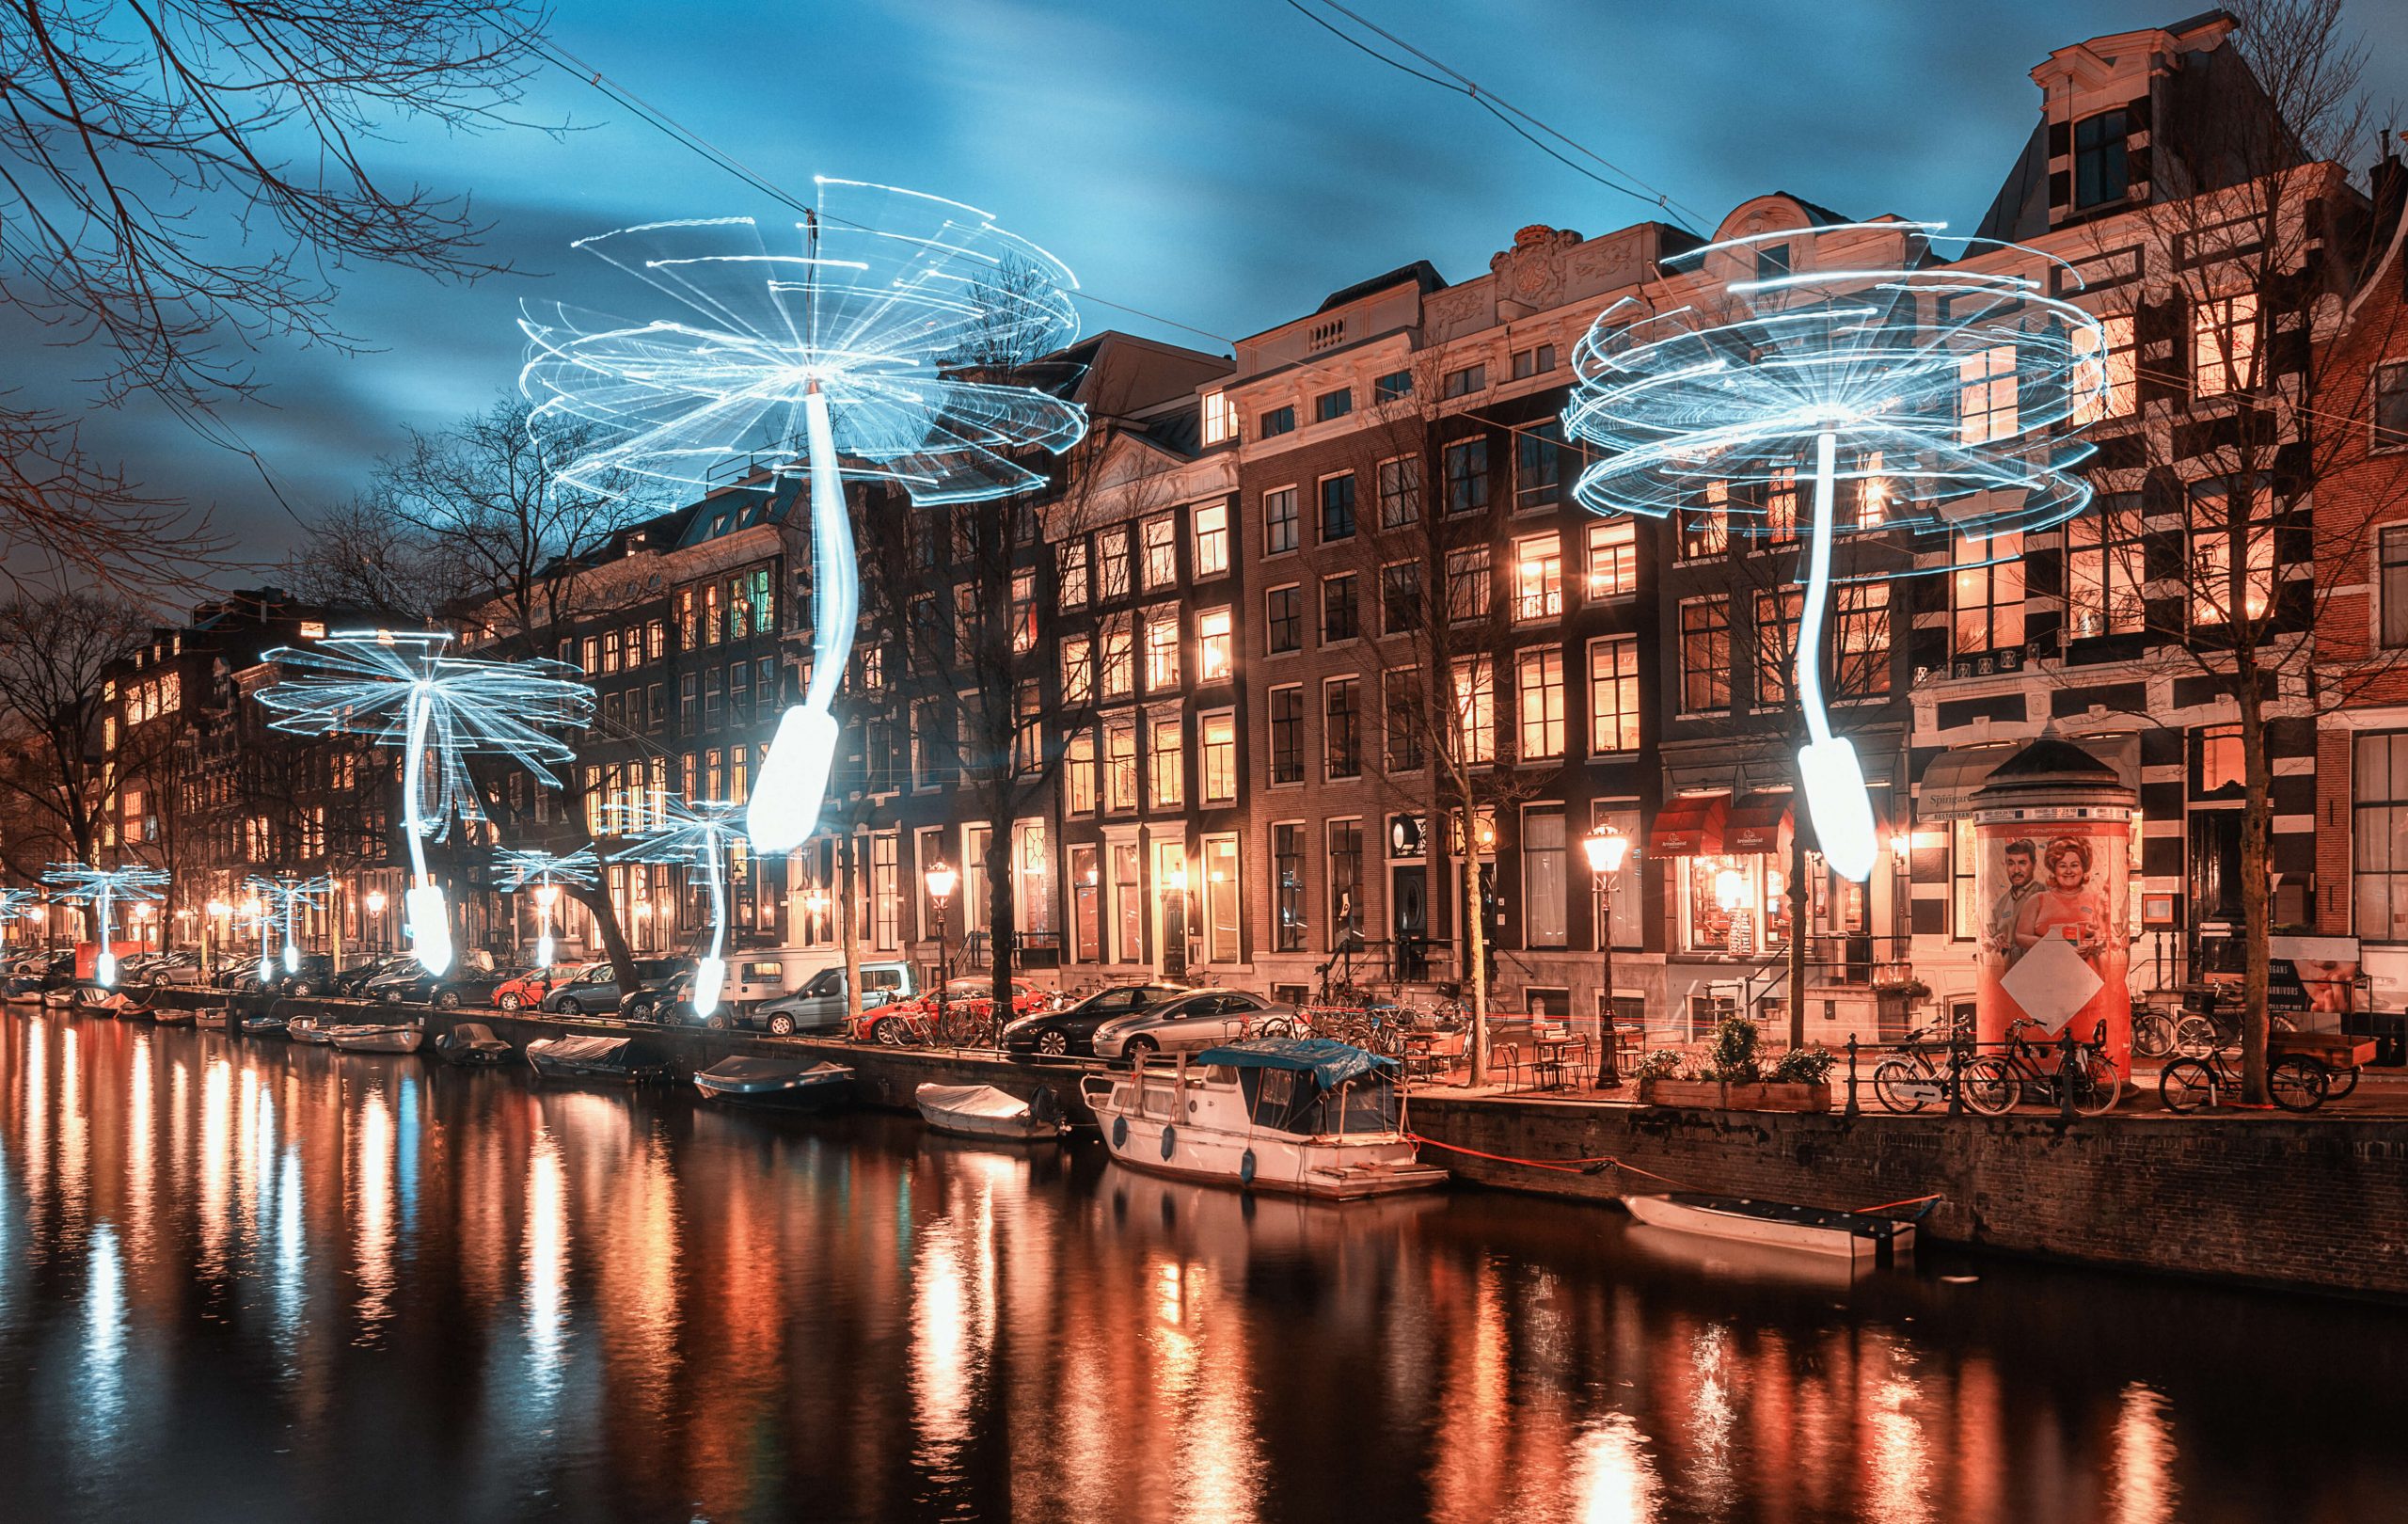 Light Festival Amsterdam 2021/2022 - Winter Festival Amsterdam